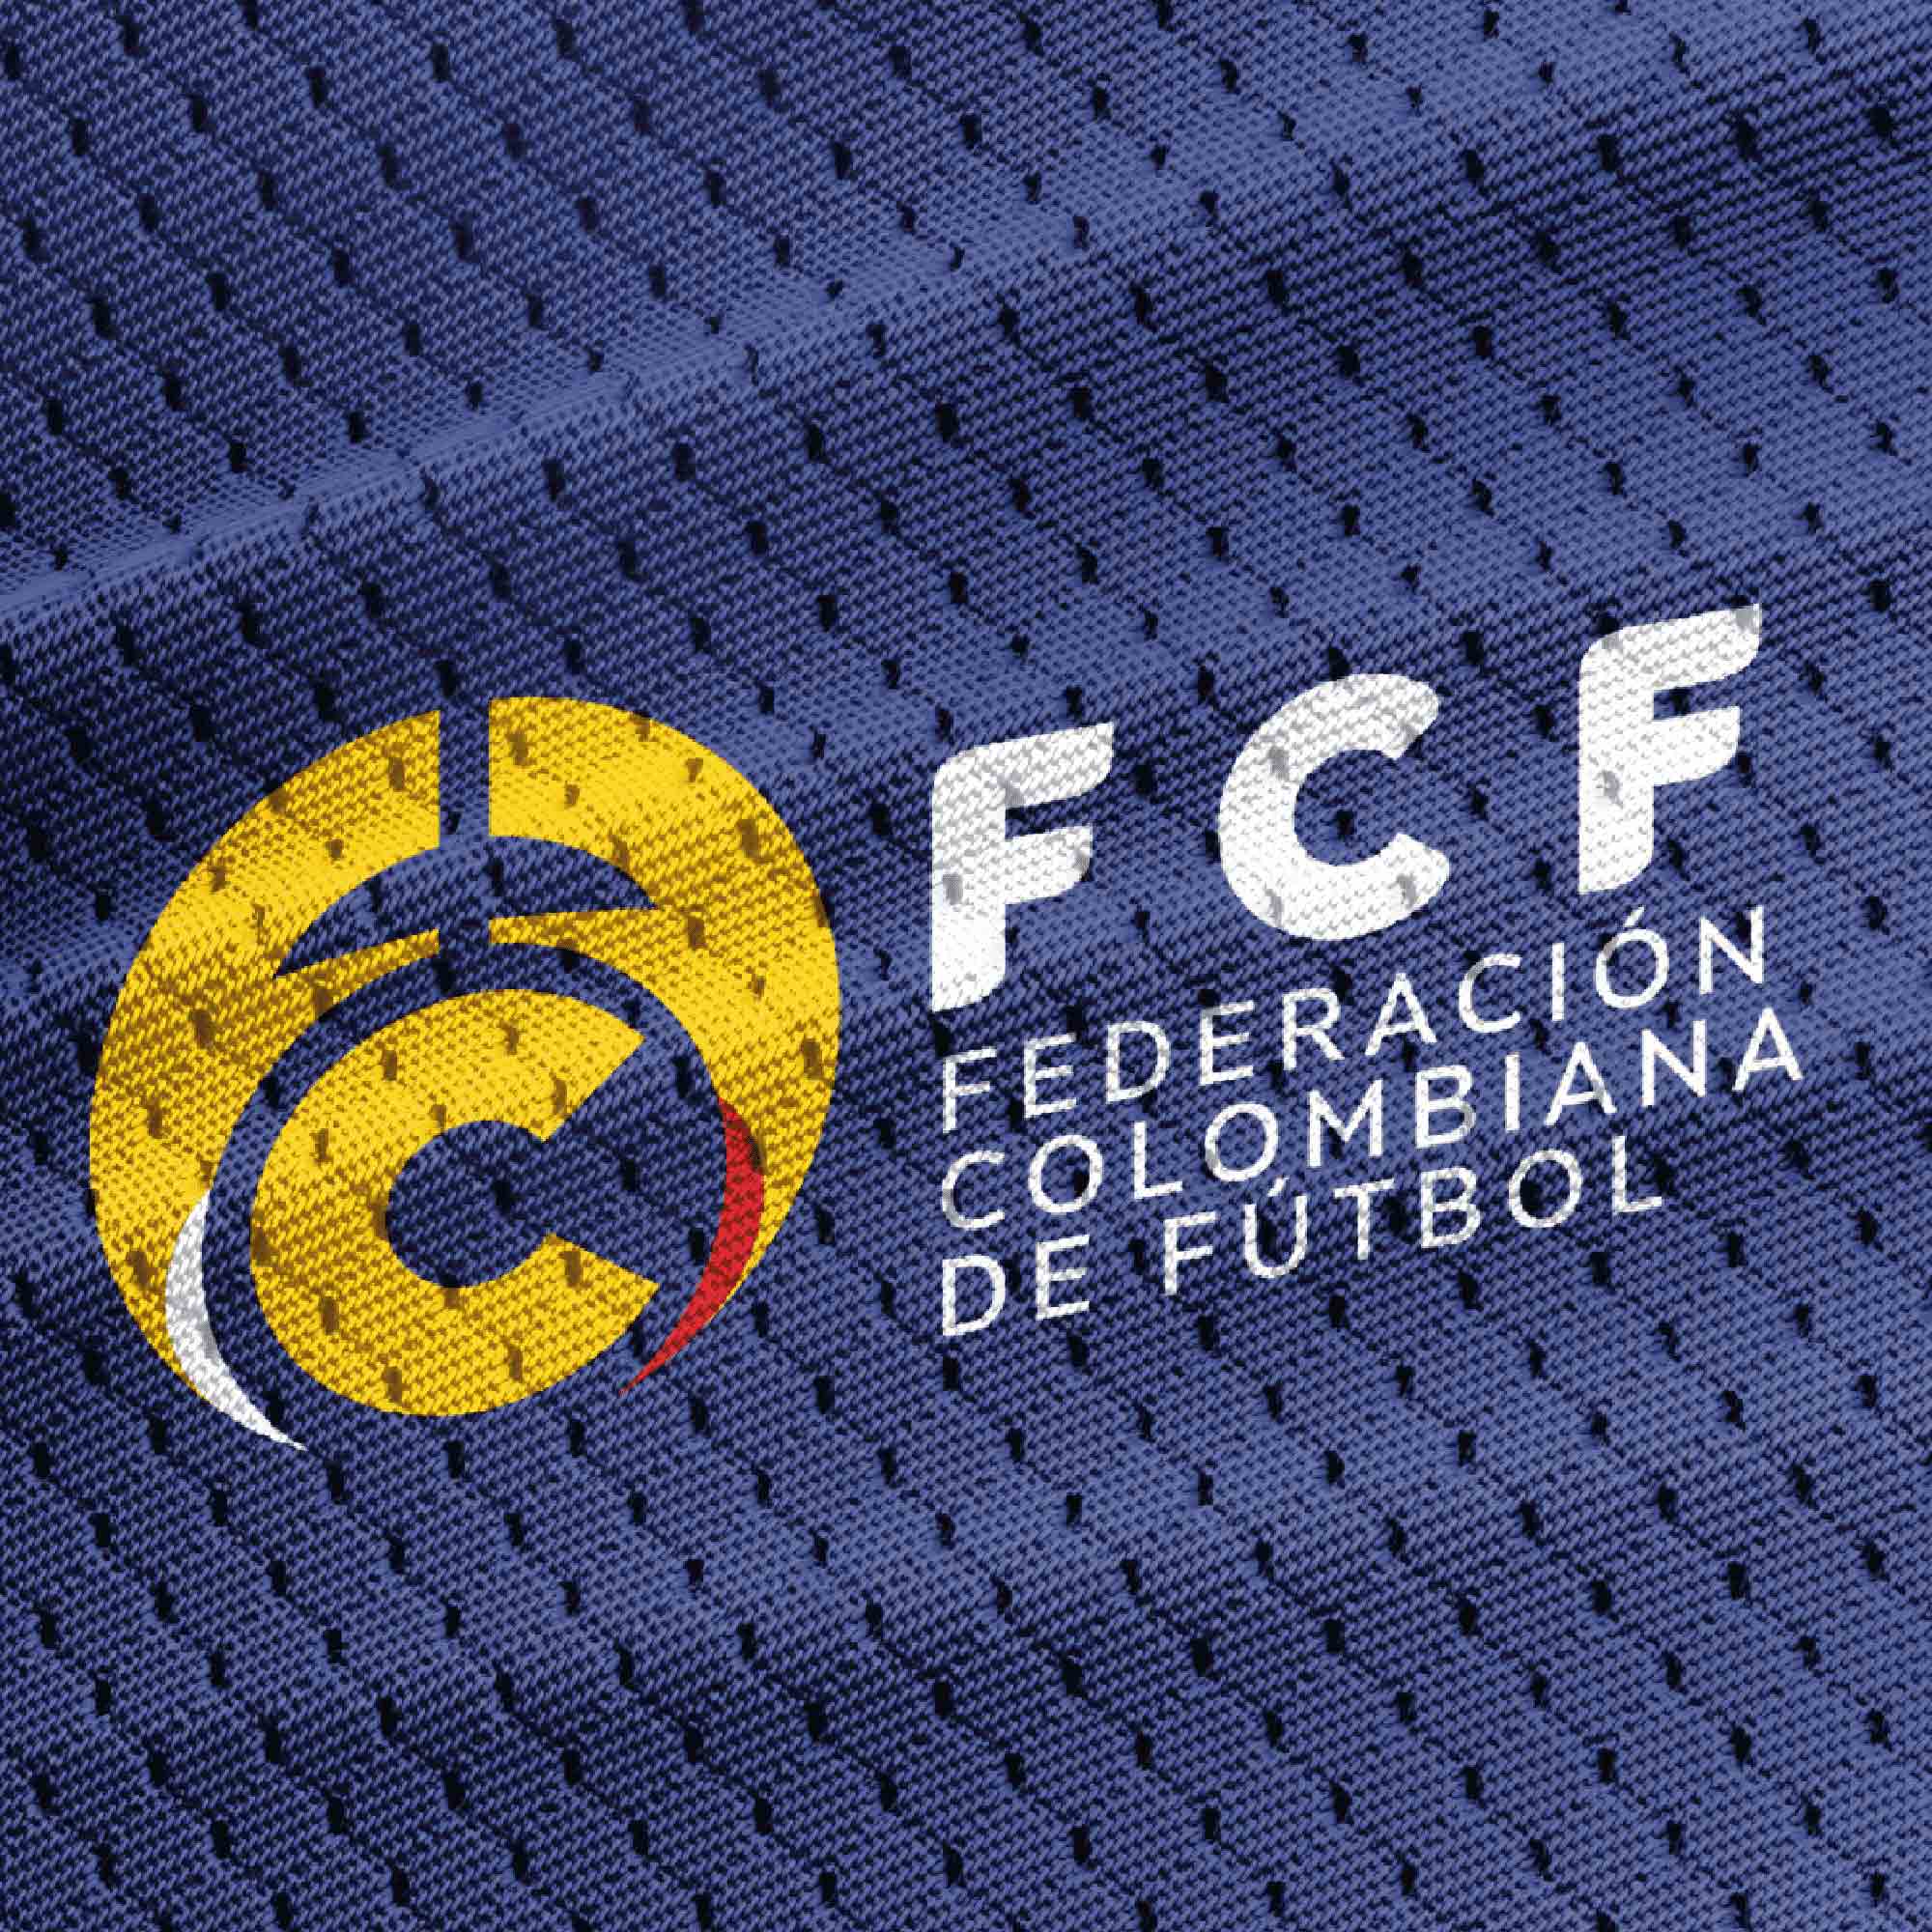 BRANDING-FEDERACION-DE-FURBOL-FCF-02